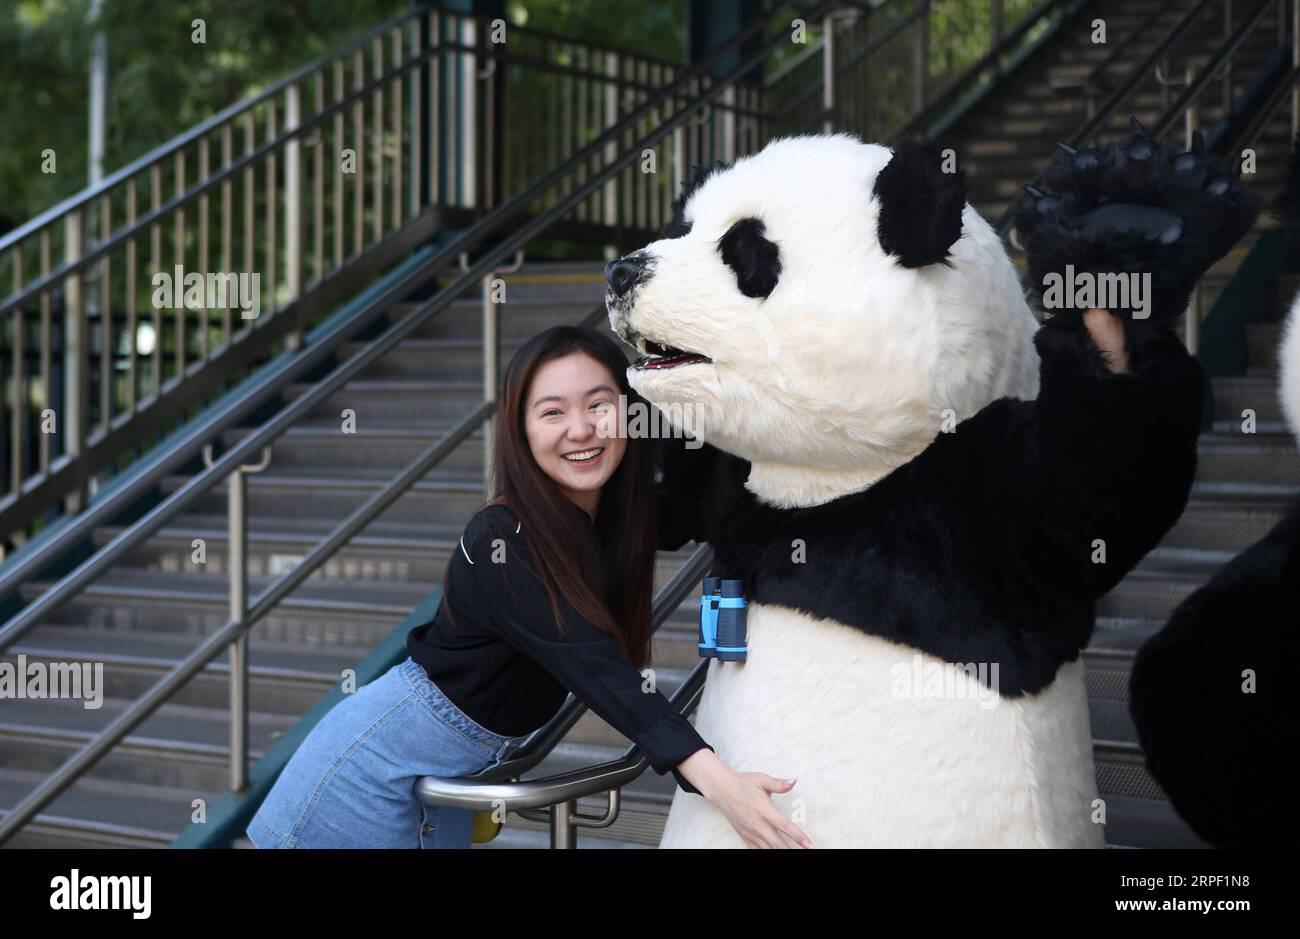 (190909) -- NEW YORK, 9 settembre 2019 -- Una donna posa per le foto con un panda in costume durante la cerimonia di lancio dell'Hello Panda Festival a New York, negli Stati Uniti, il 9 settembre 2019. Un festival invernale con lanterne cinesi, arti e cucine mondiali atterrerà a dicembre nel Citi Field di New York, il più grande del suo genere in Nord America, secondo una conferenza stampa di lunedì. Con una superficie di quasi 70.000 metri quadrati all'interno del famoso campo da baseball nel quartiere del Queens, l'Hello Panda Festival presenterà oltre 120 set di lanterne colorate. Il festival si terrà a partire da dicembre Foto Stock